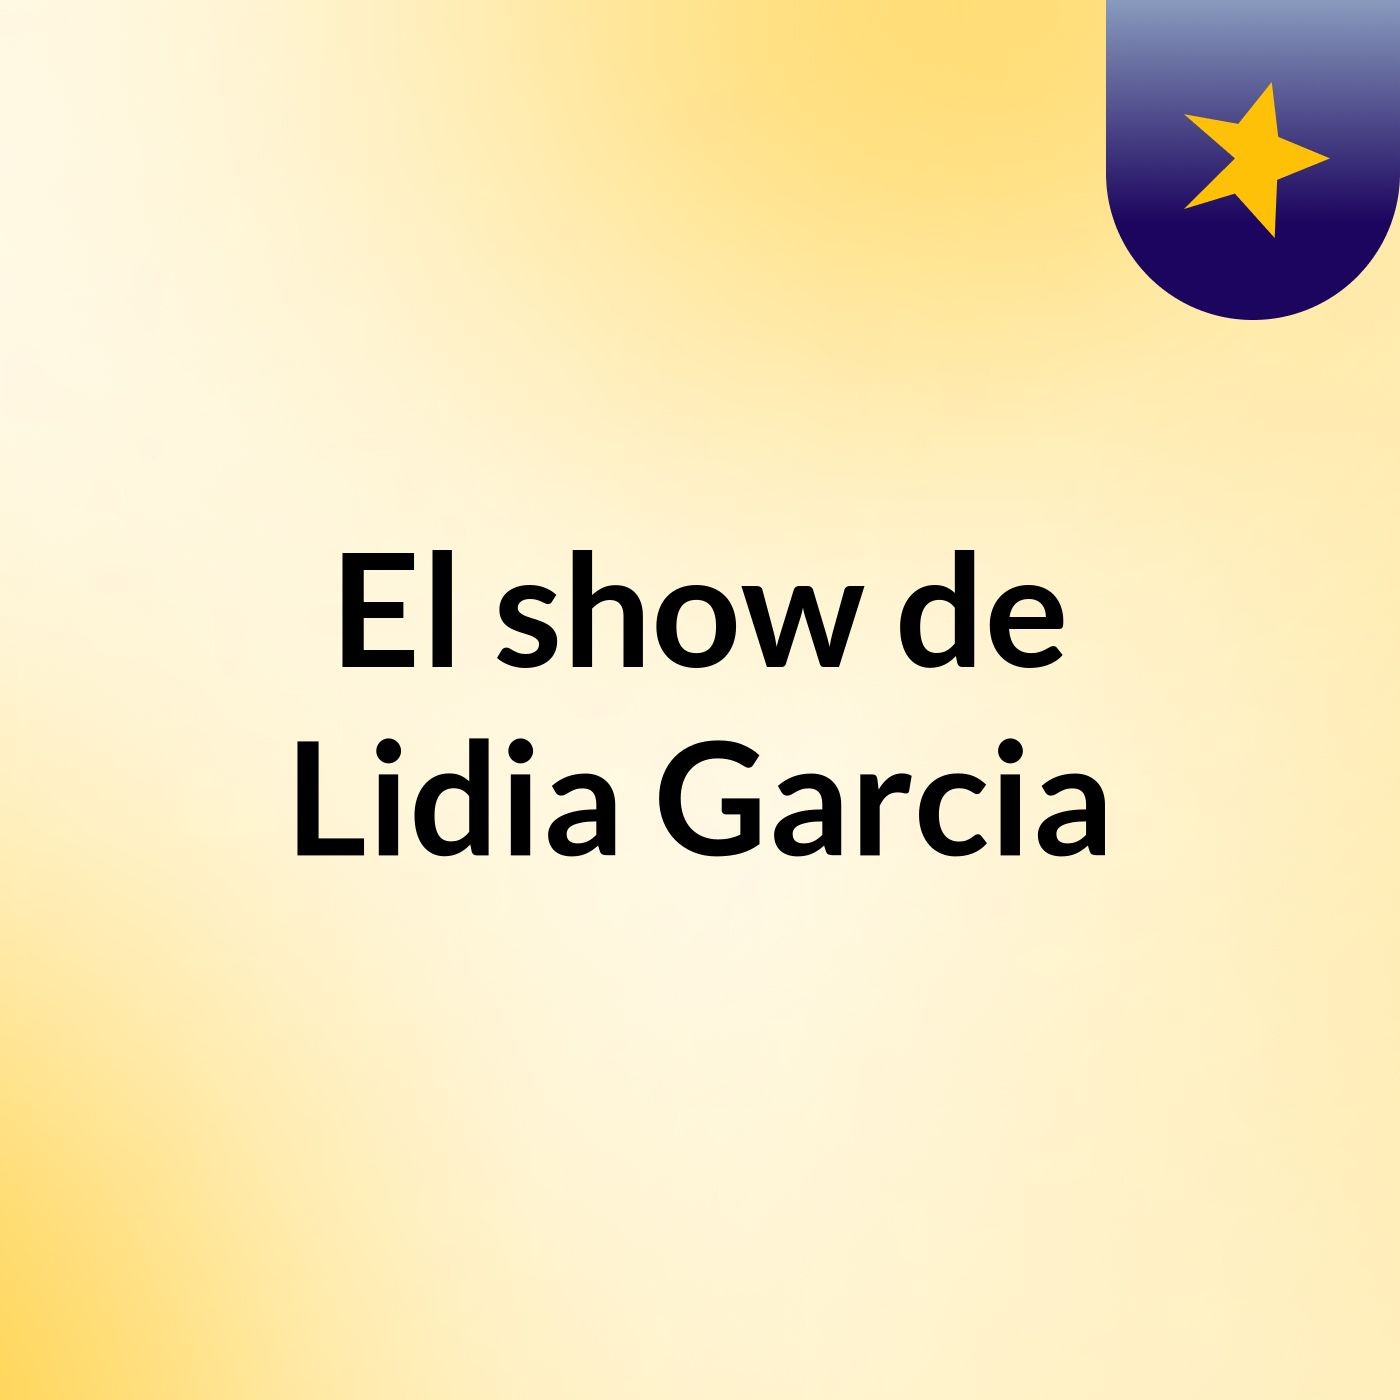 El show de Lidia Garcia